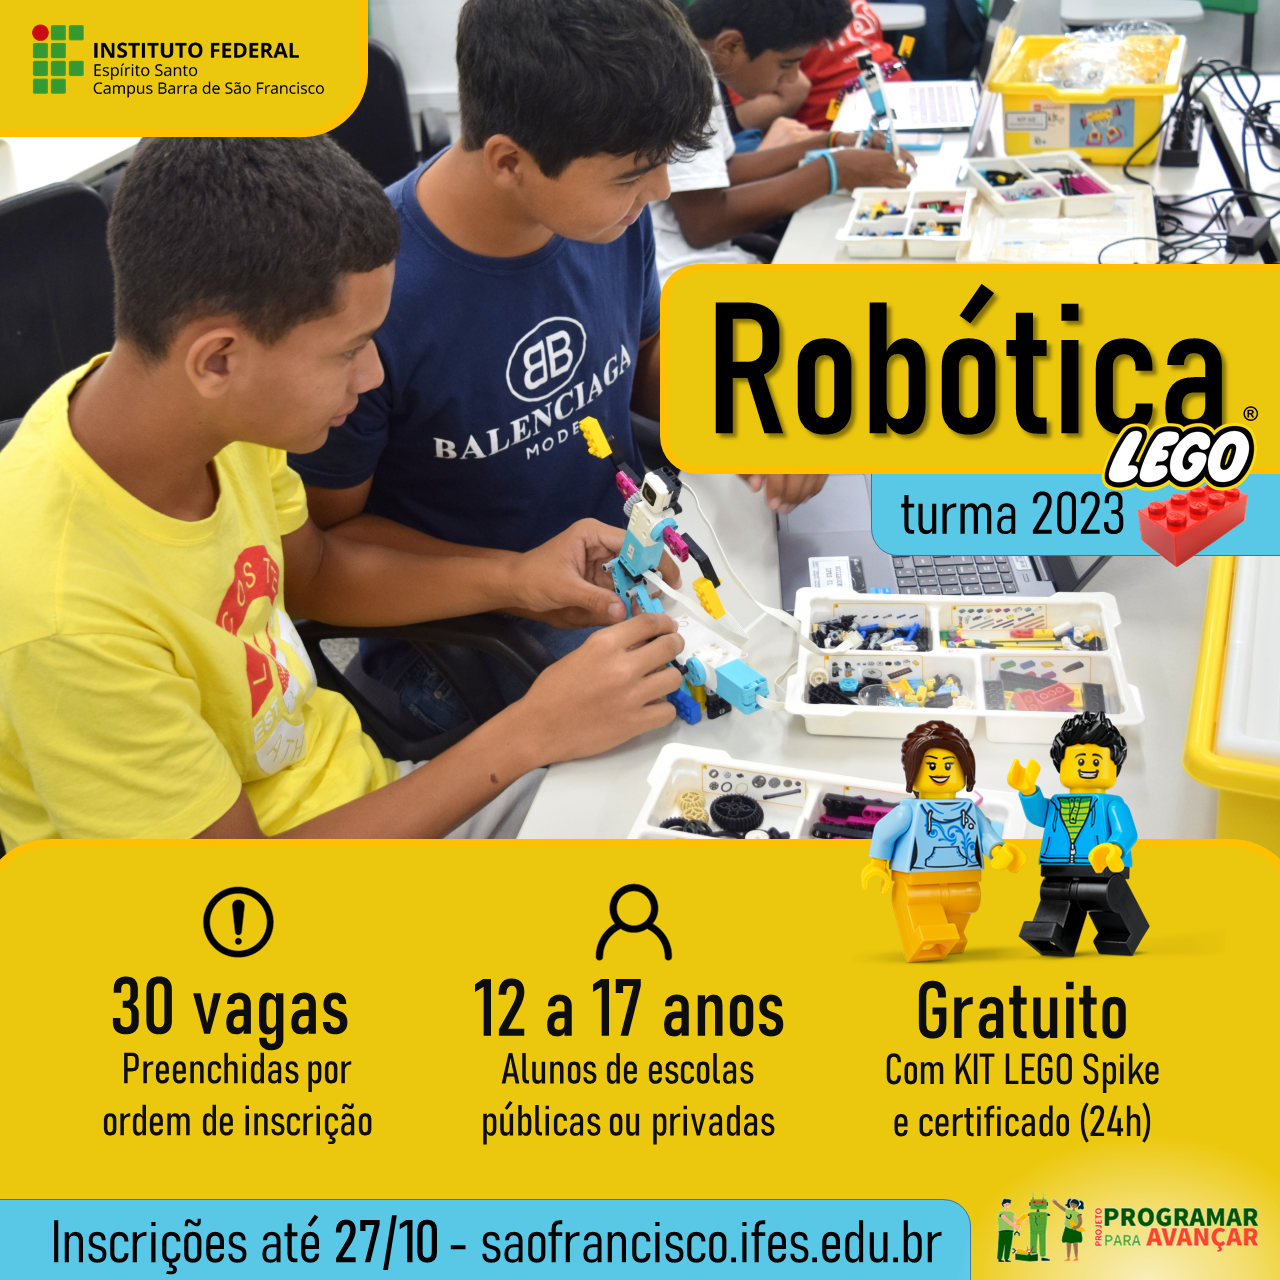 ROBOTICA LEGO TURMA 2023